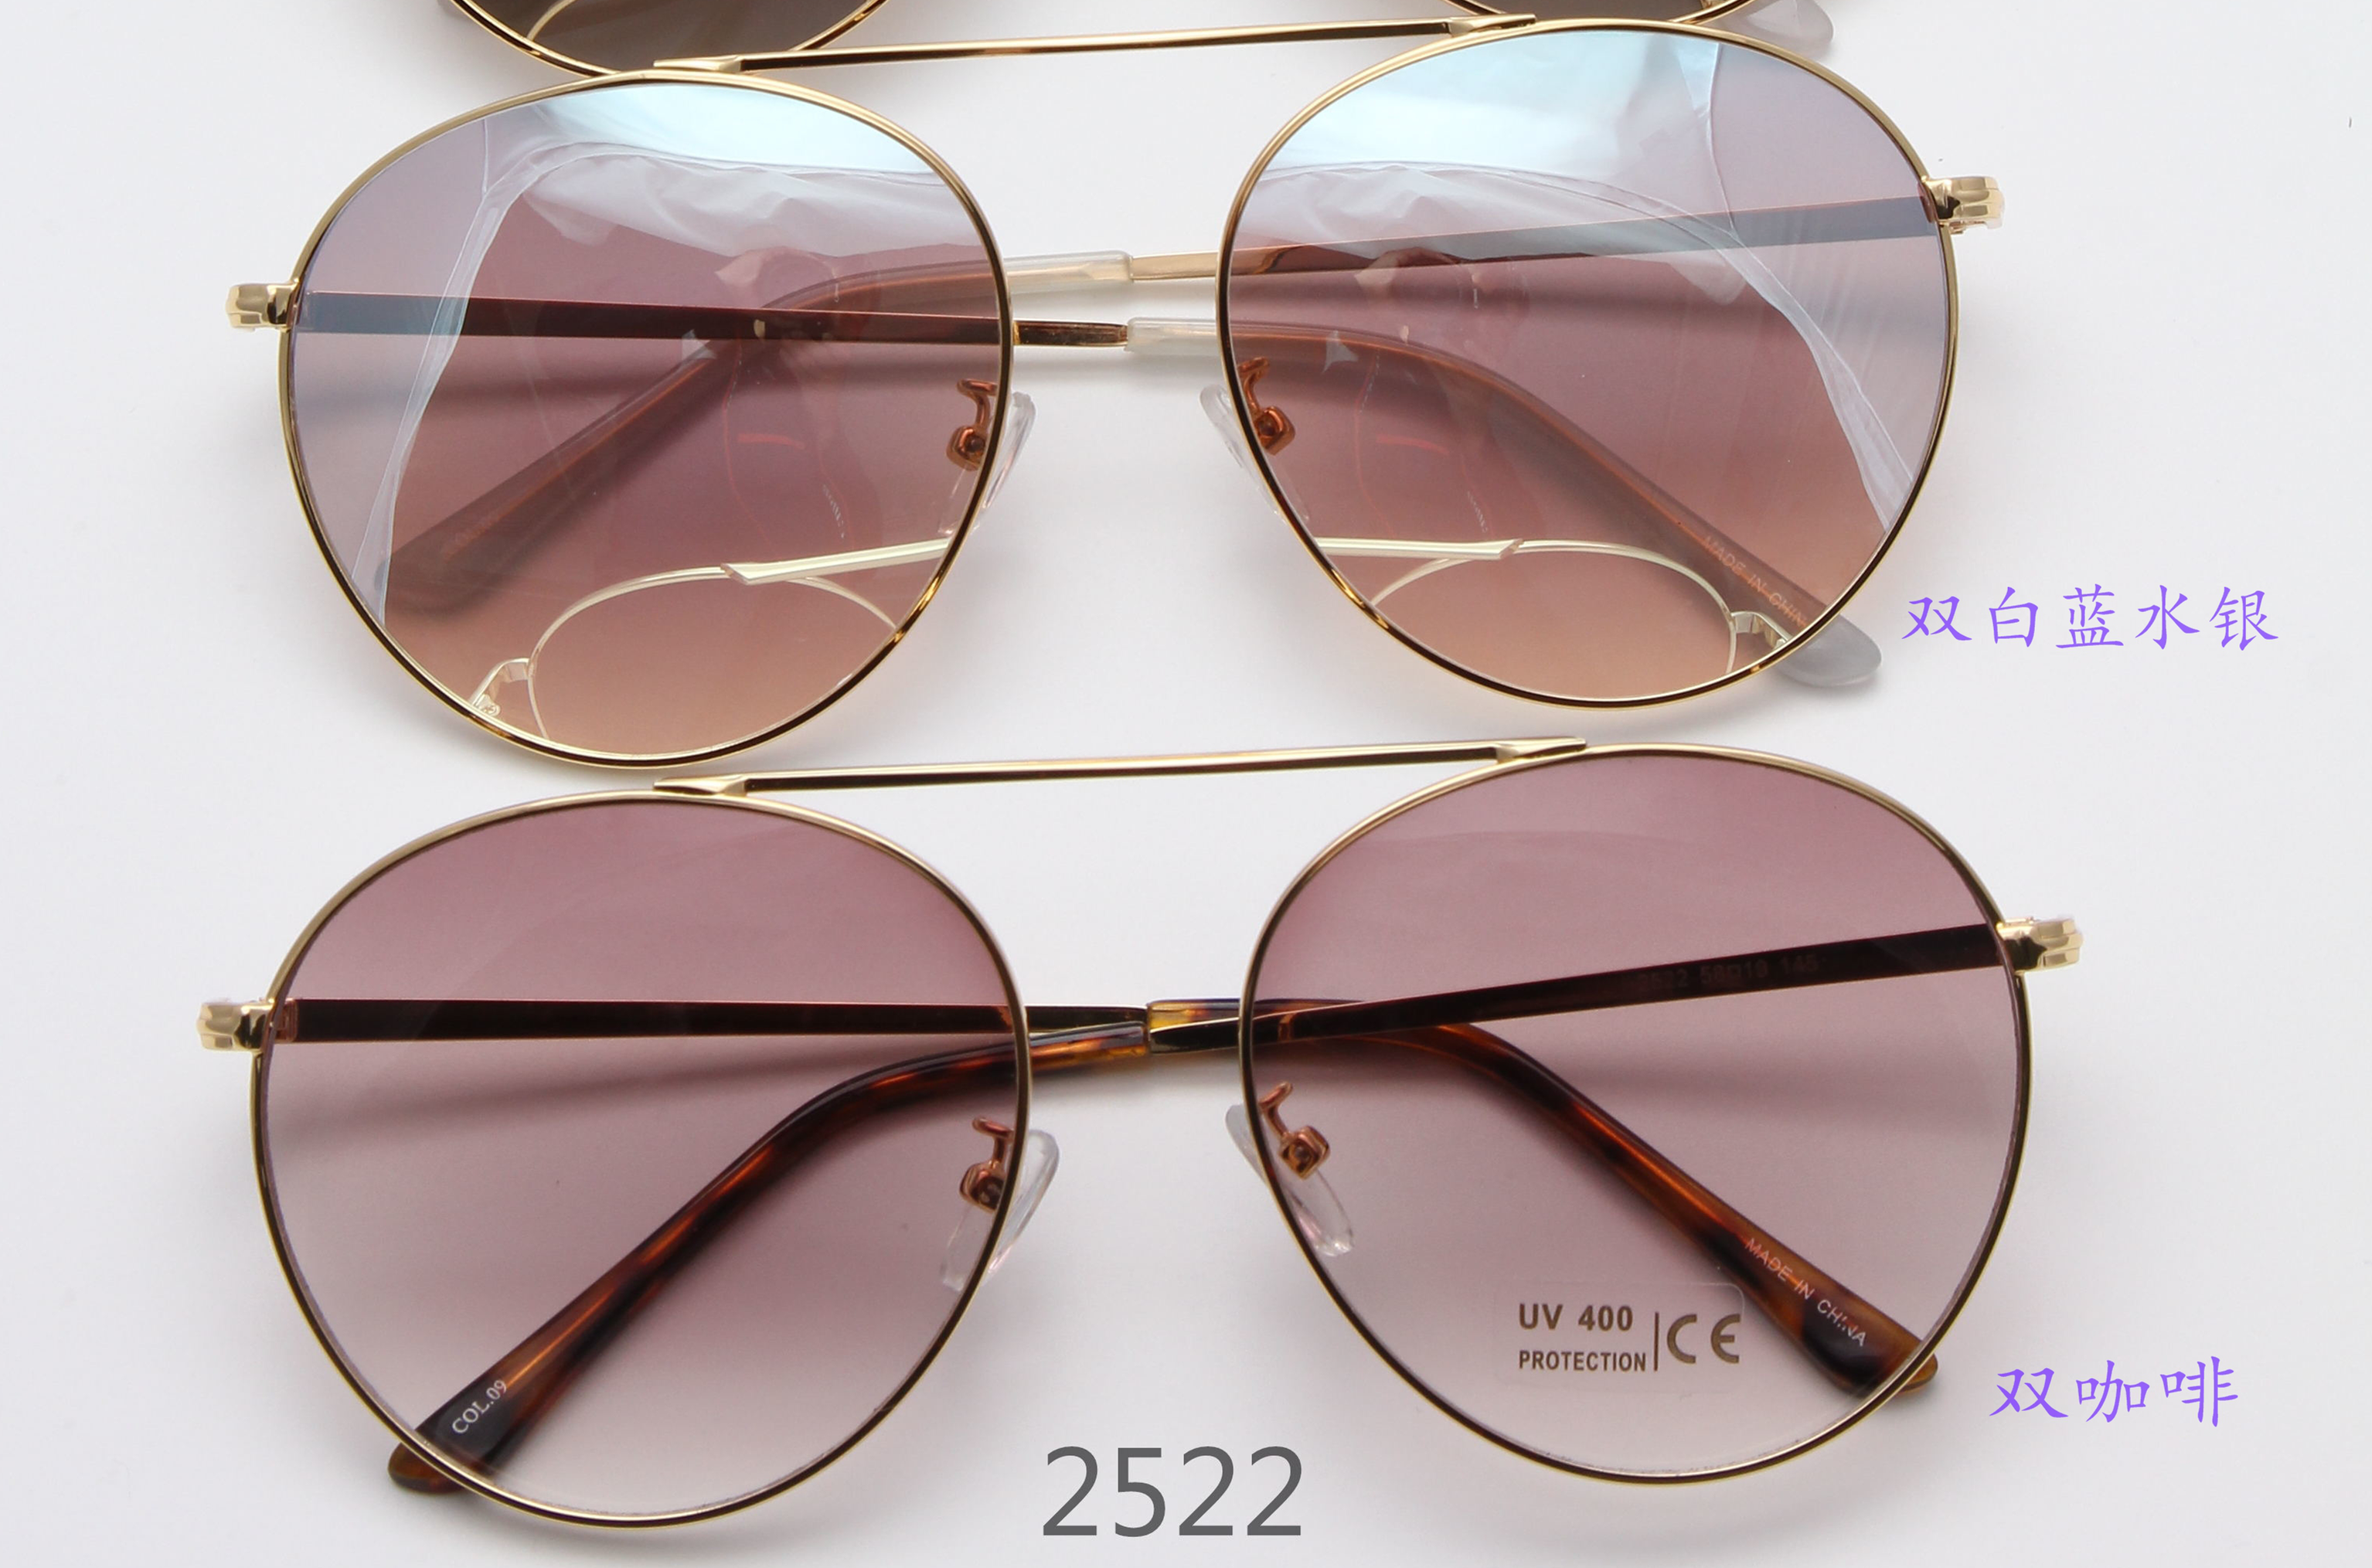 新款高档时尚太阳镜UV400镜片防紫外线眼镜防晒镜1图